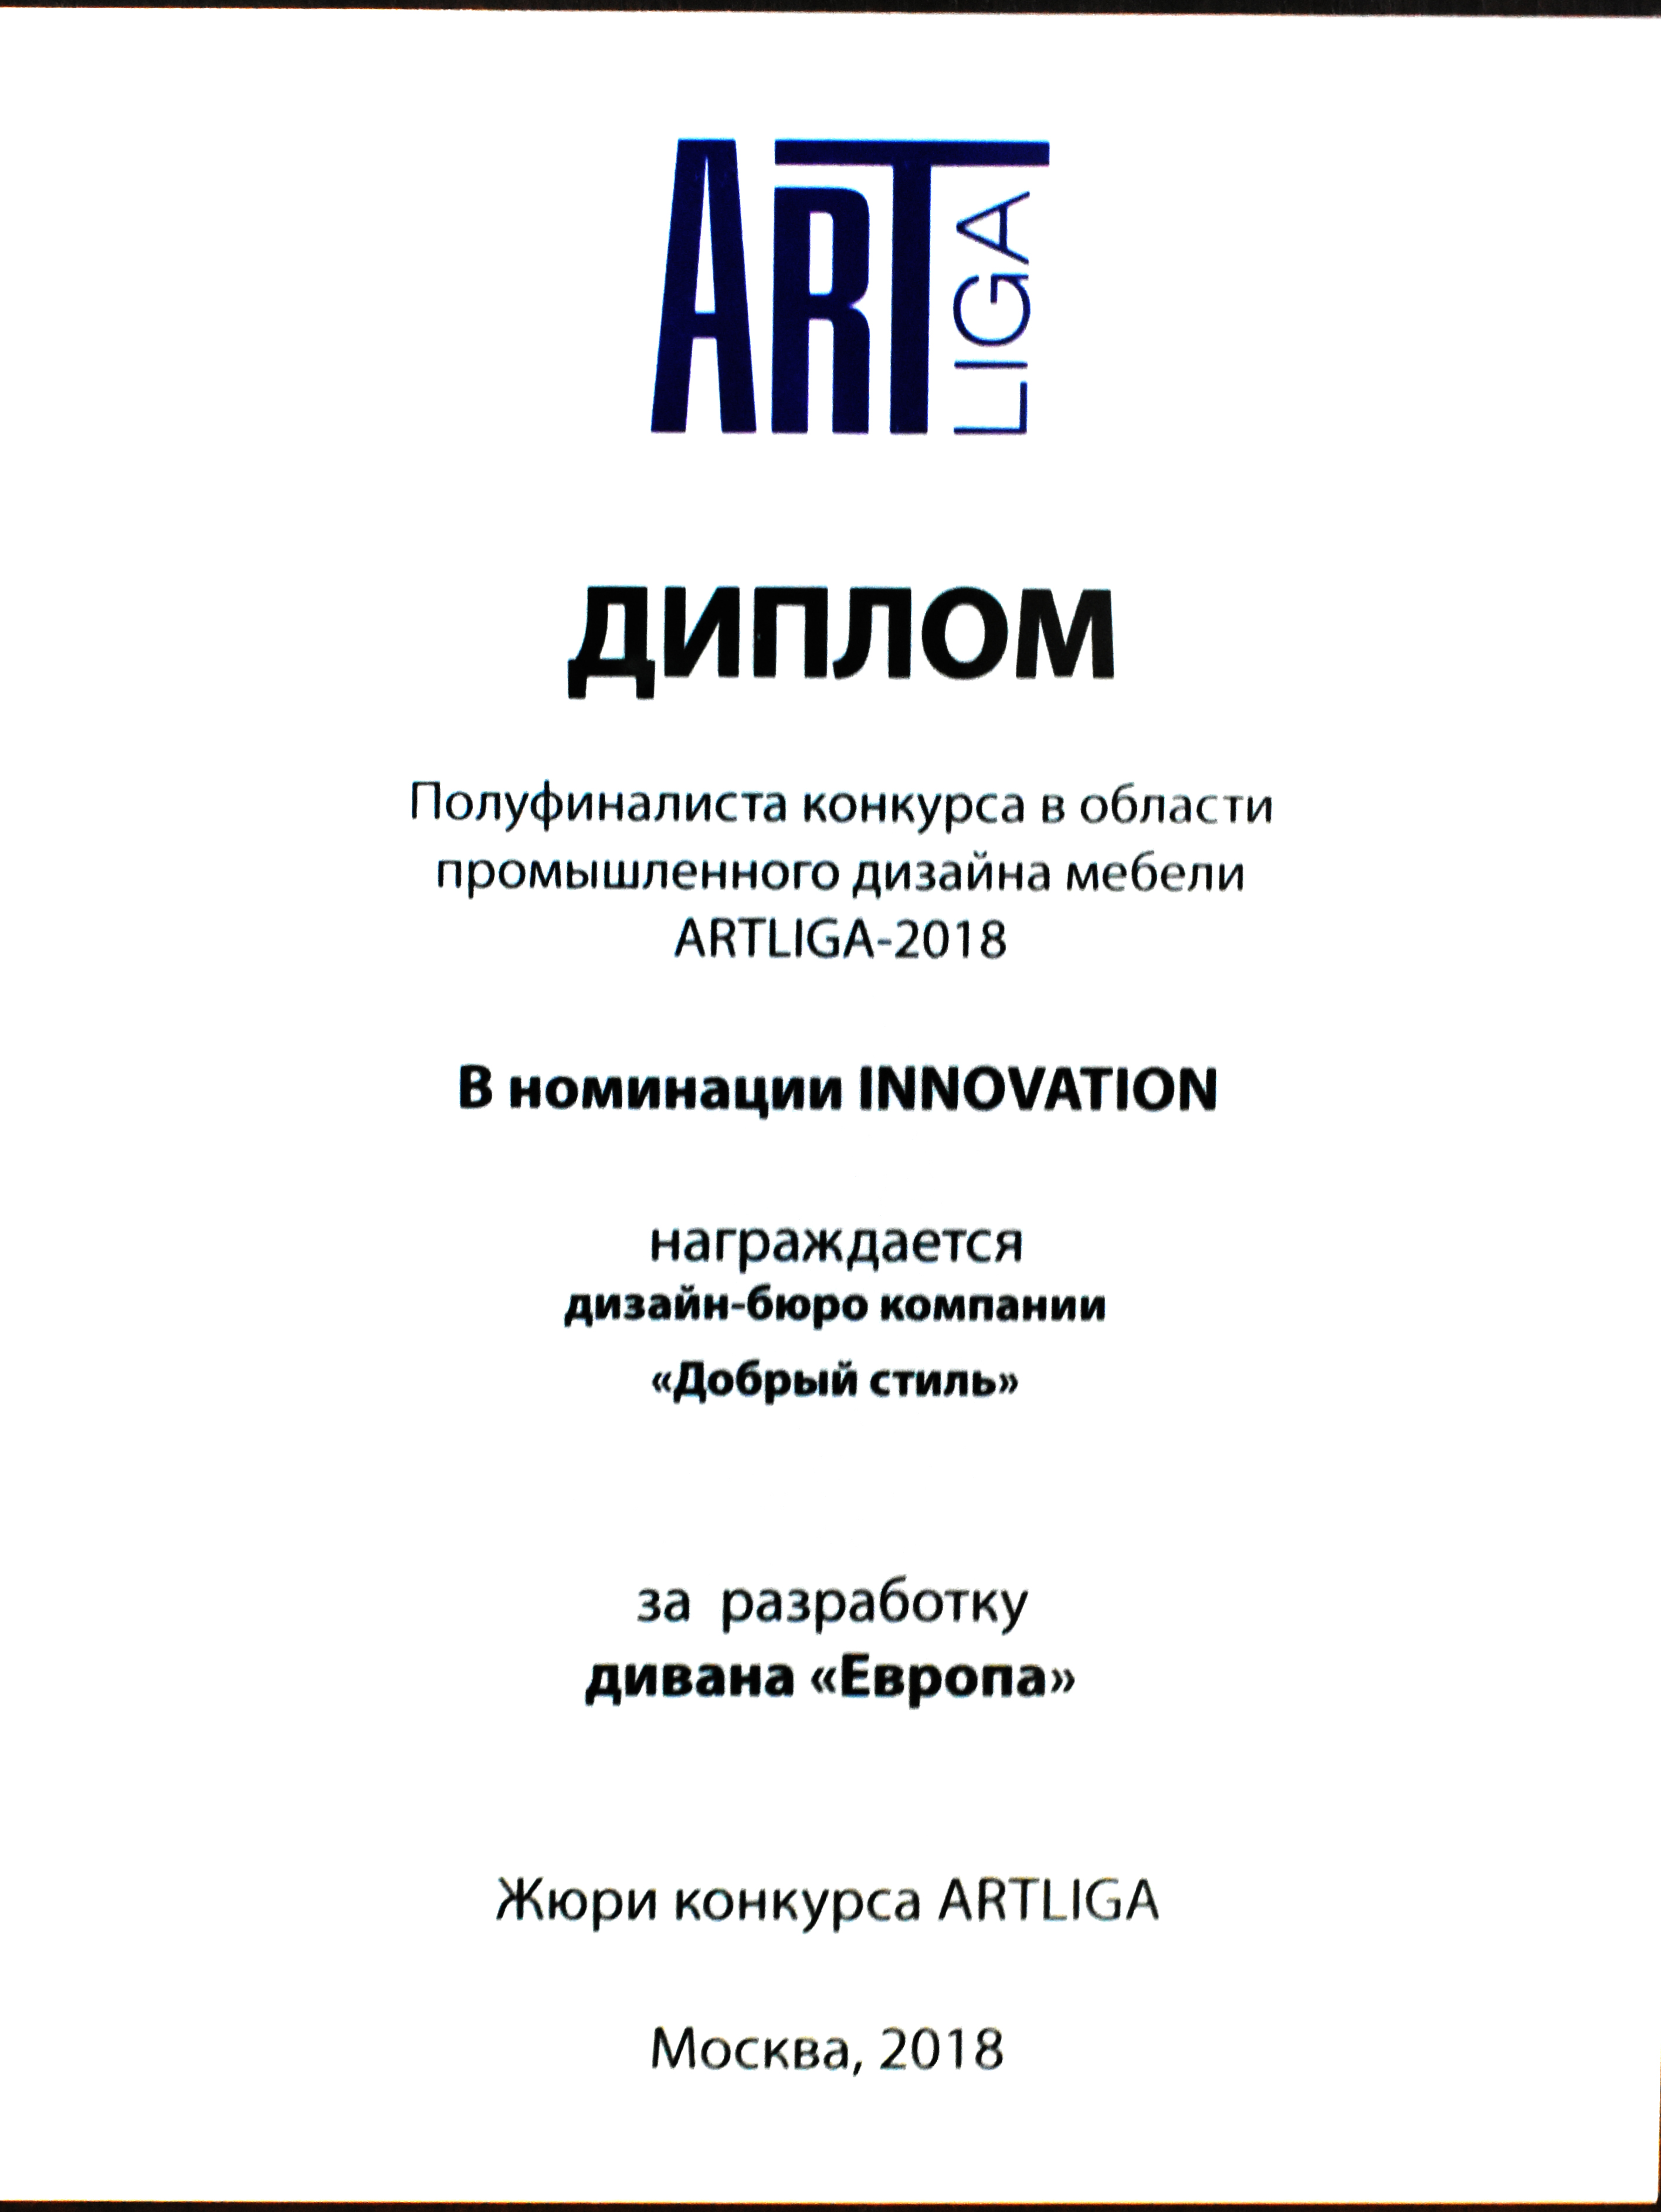 главная картинка новости «ARTLIGA» - конкурс в области промышленного дизайна